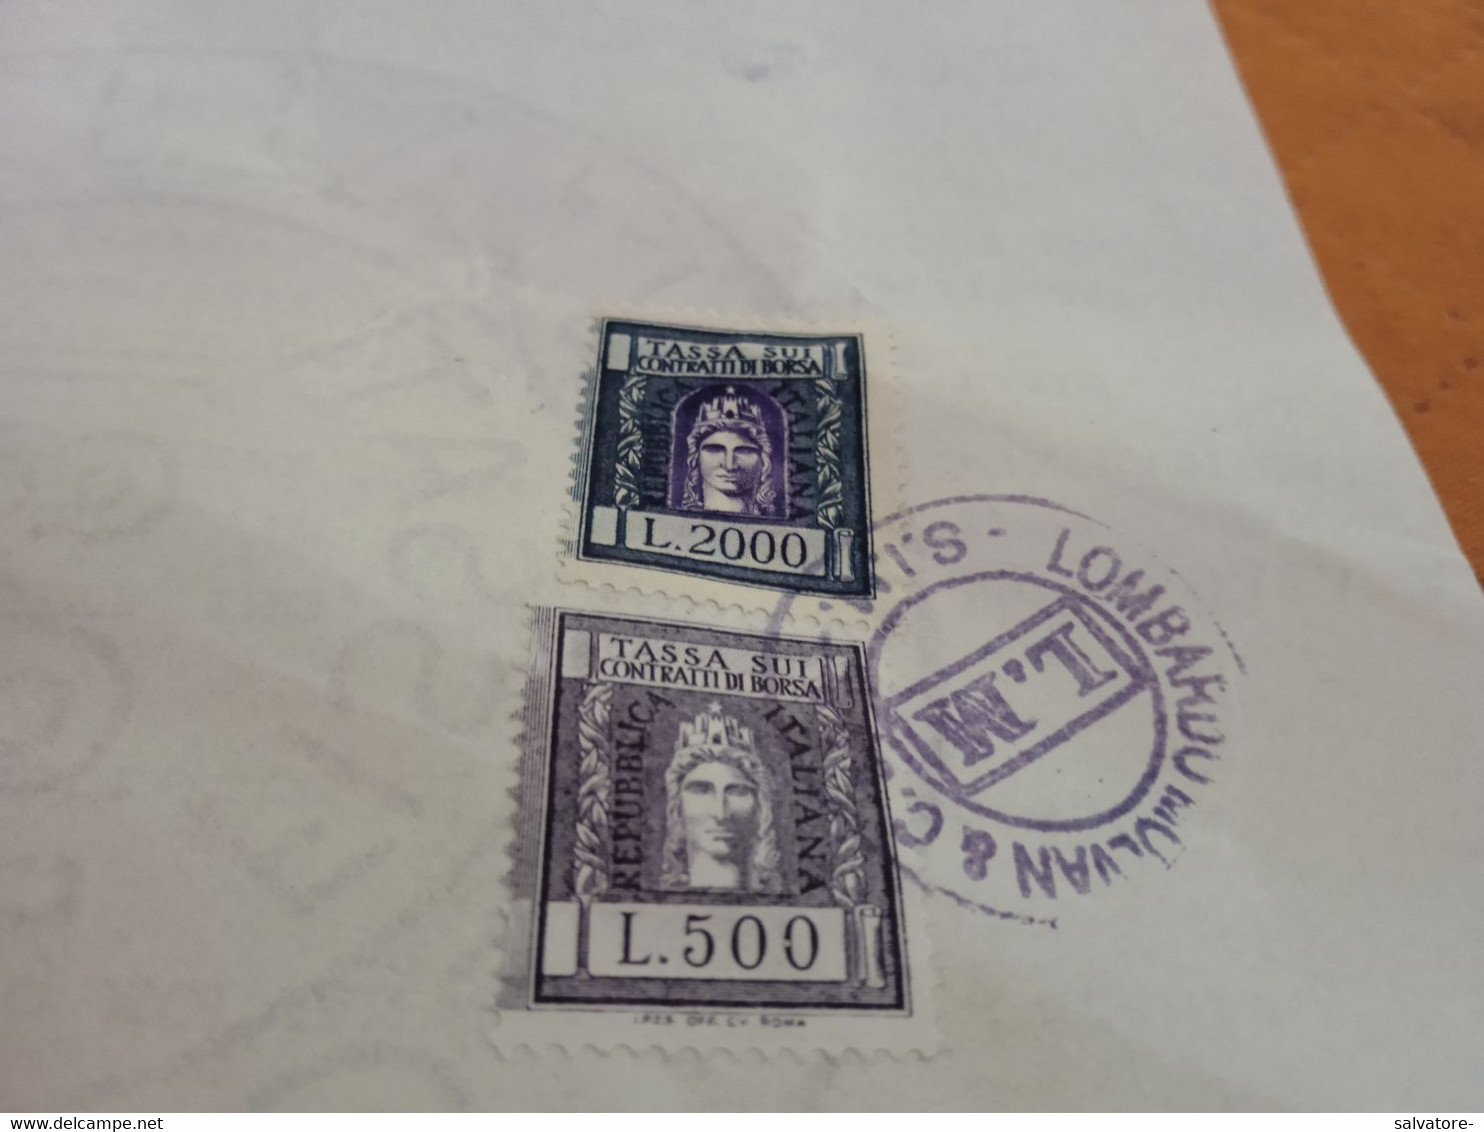 MARCHE DA BOLLO TASSA SUI CONTRATTI DI BORSA LIRE 2000 + 500 - 1992 - Revenue Stamps